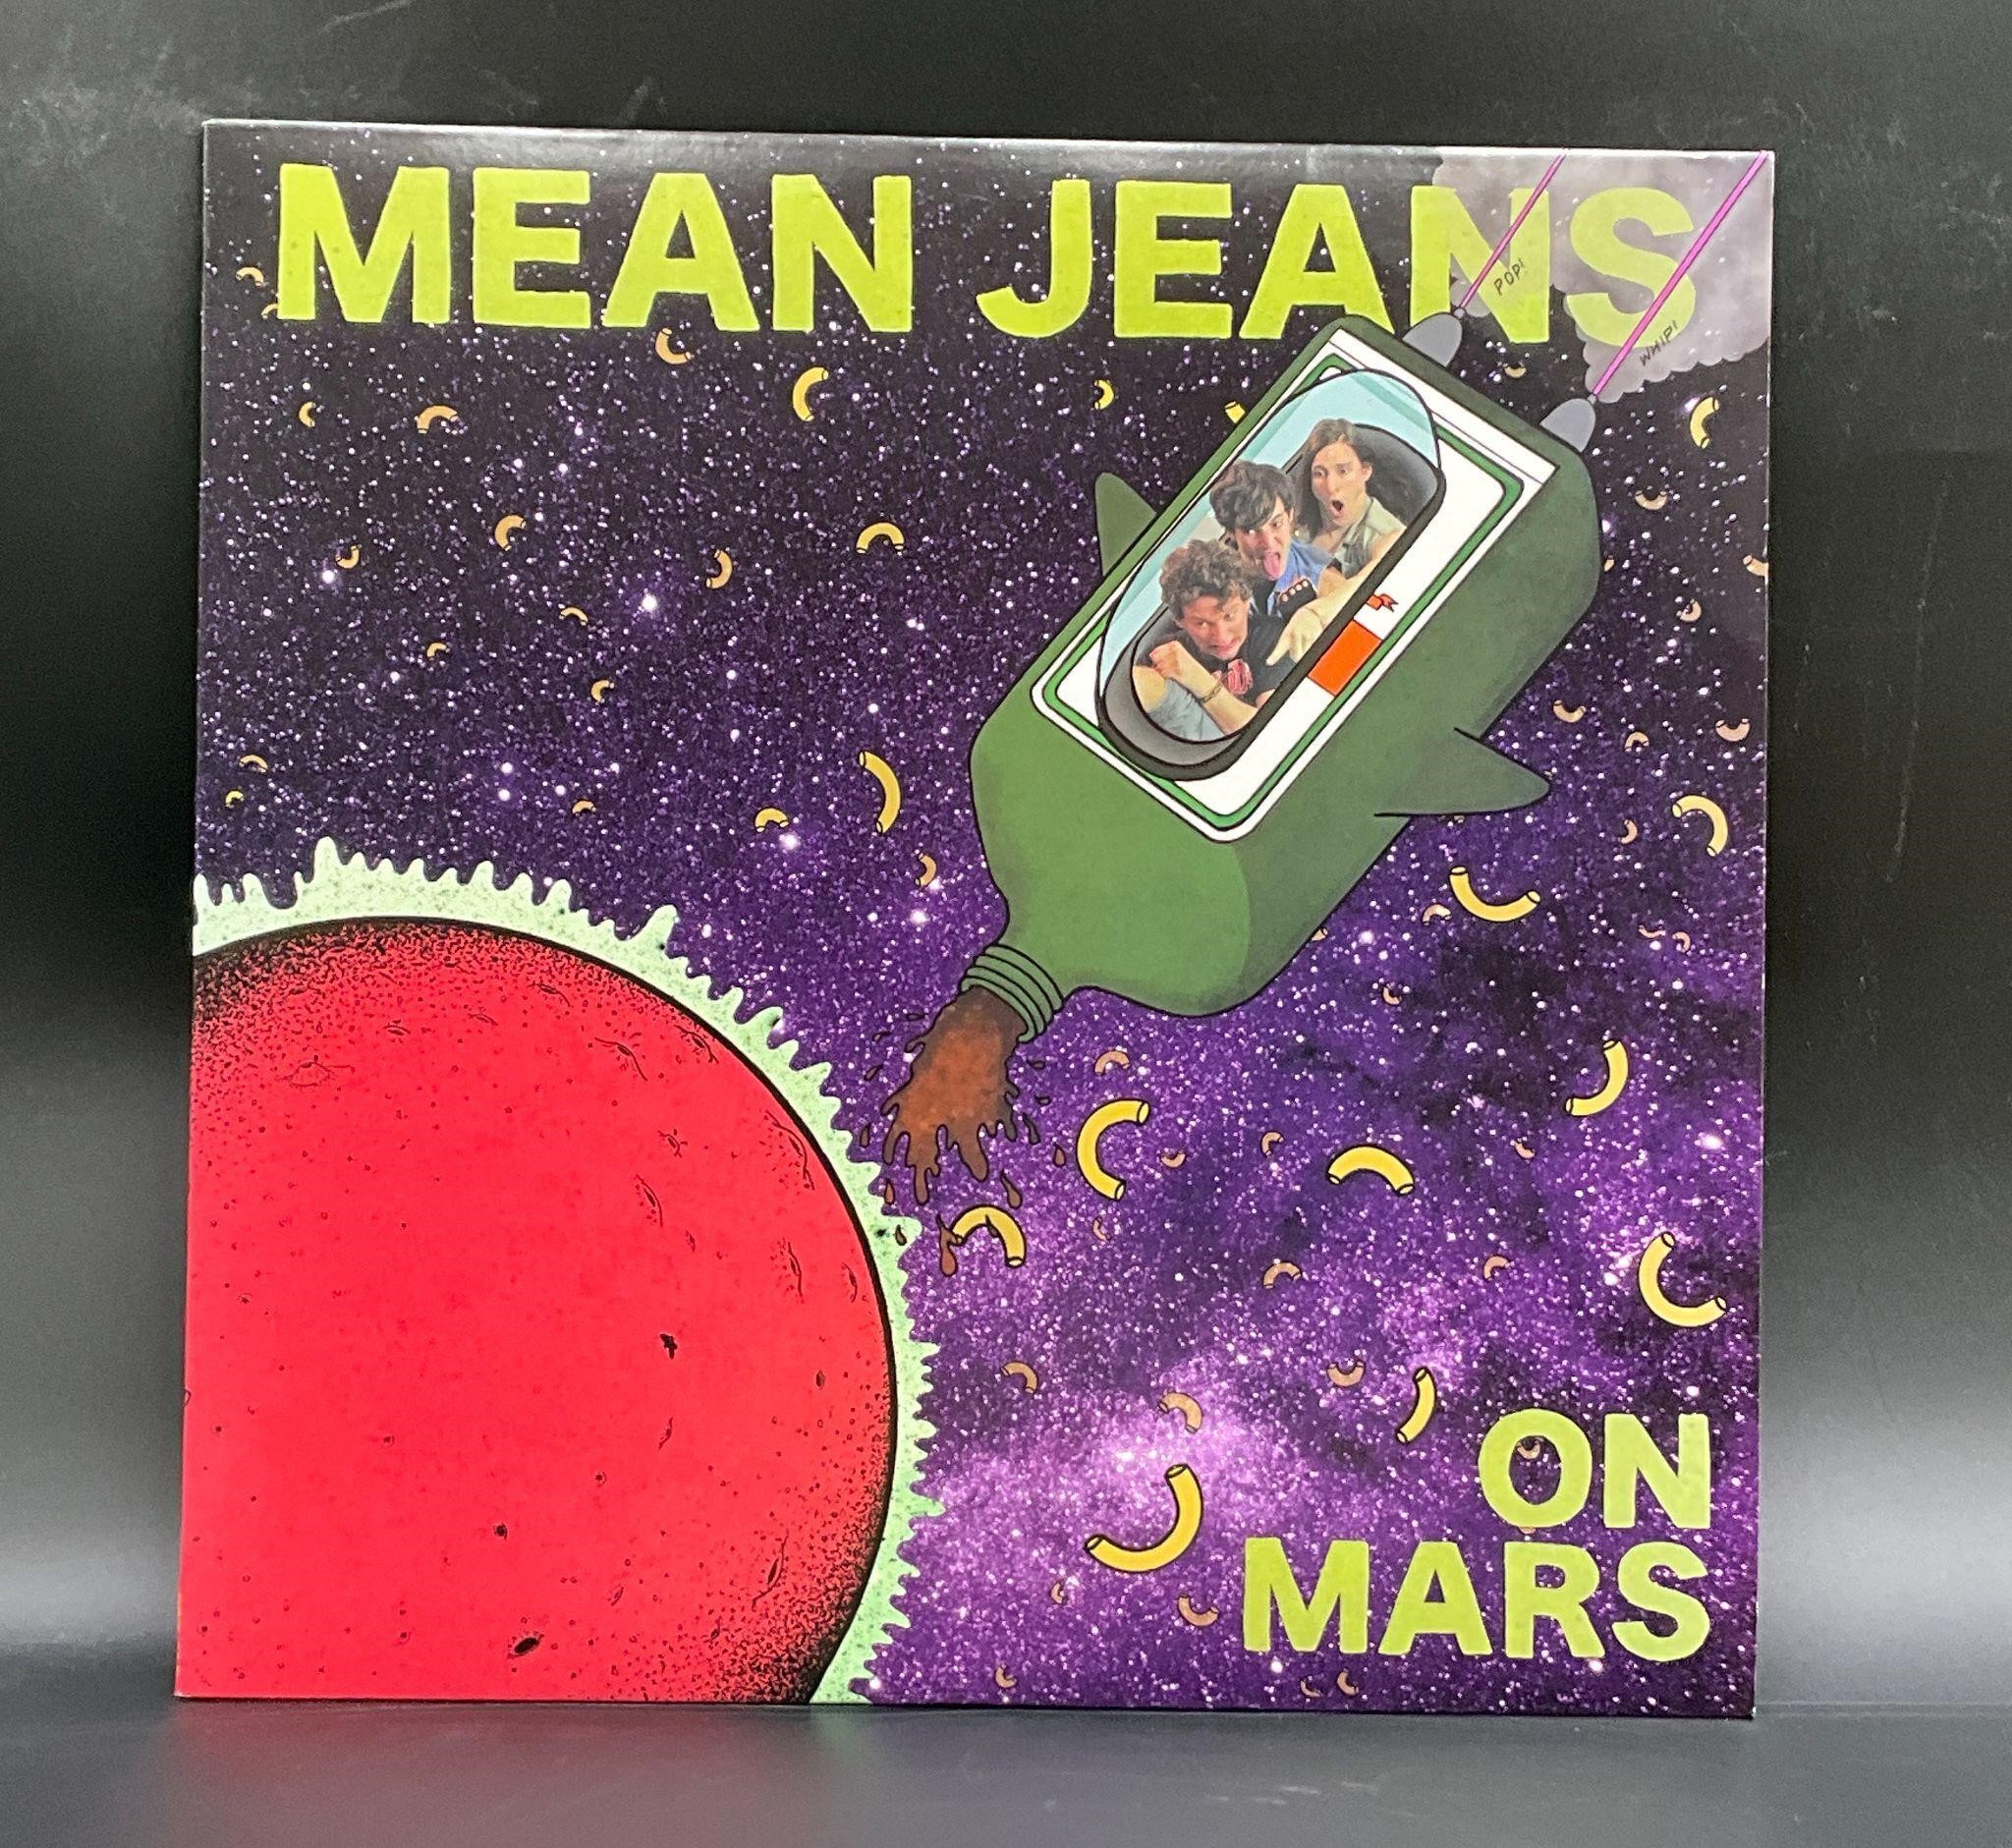 2012 Mean Jeans "On Mars" Punk LP Album